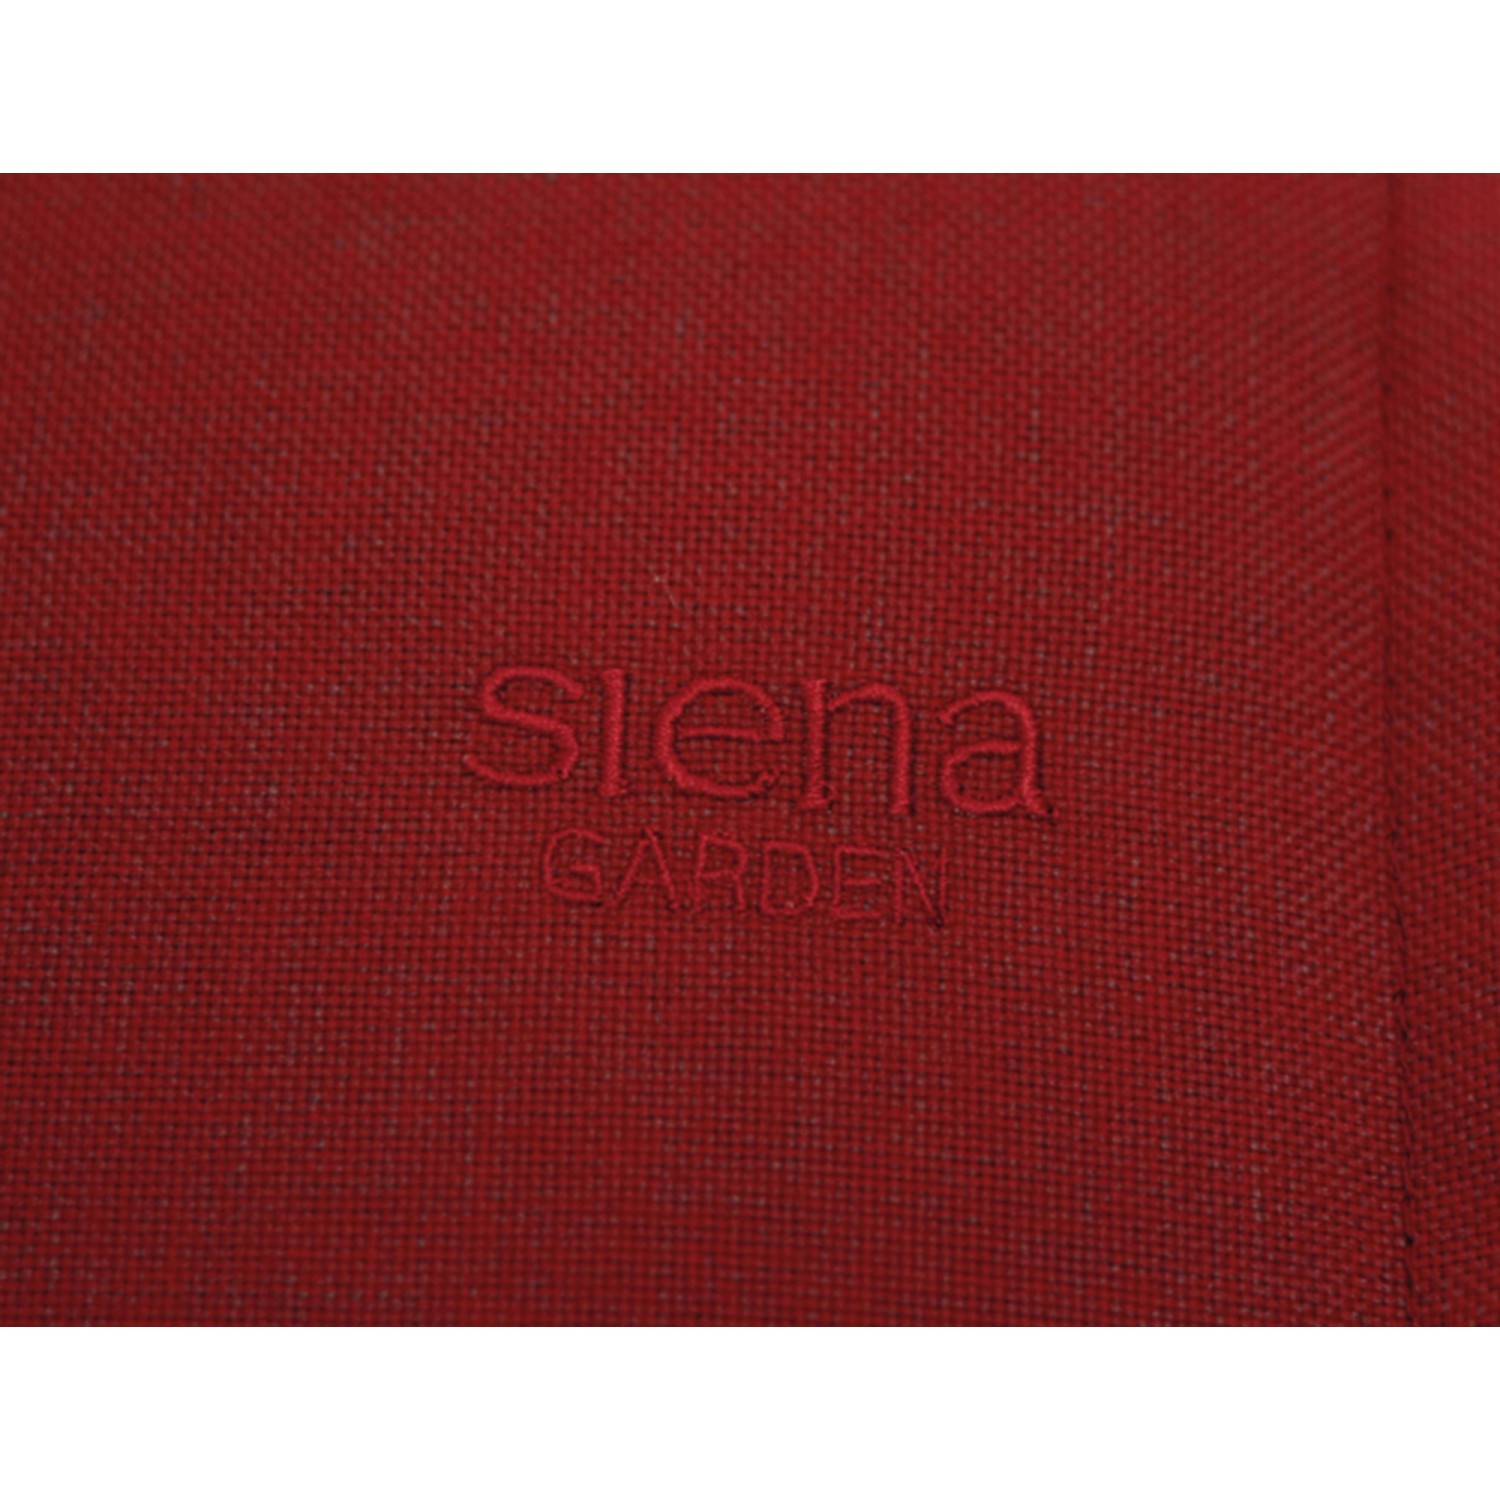 Siena Garden Auflage Liege Stella Rot ca. 200x58x6 cm